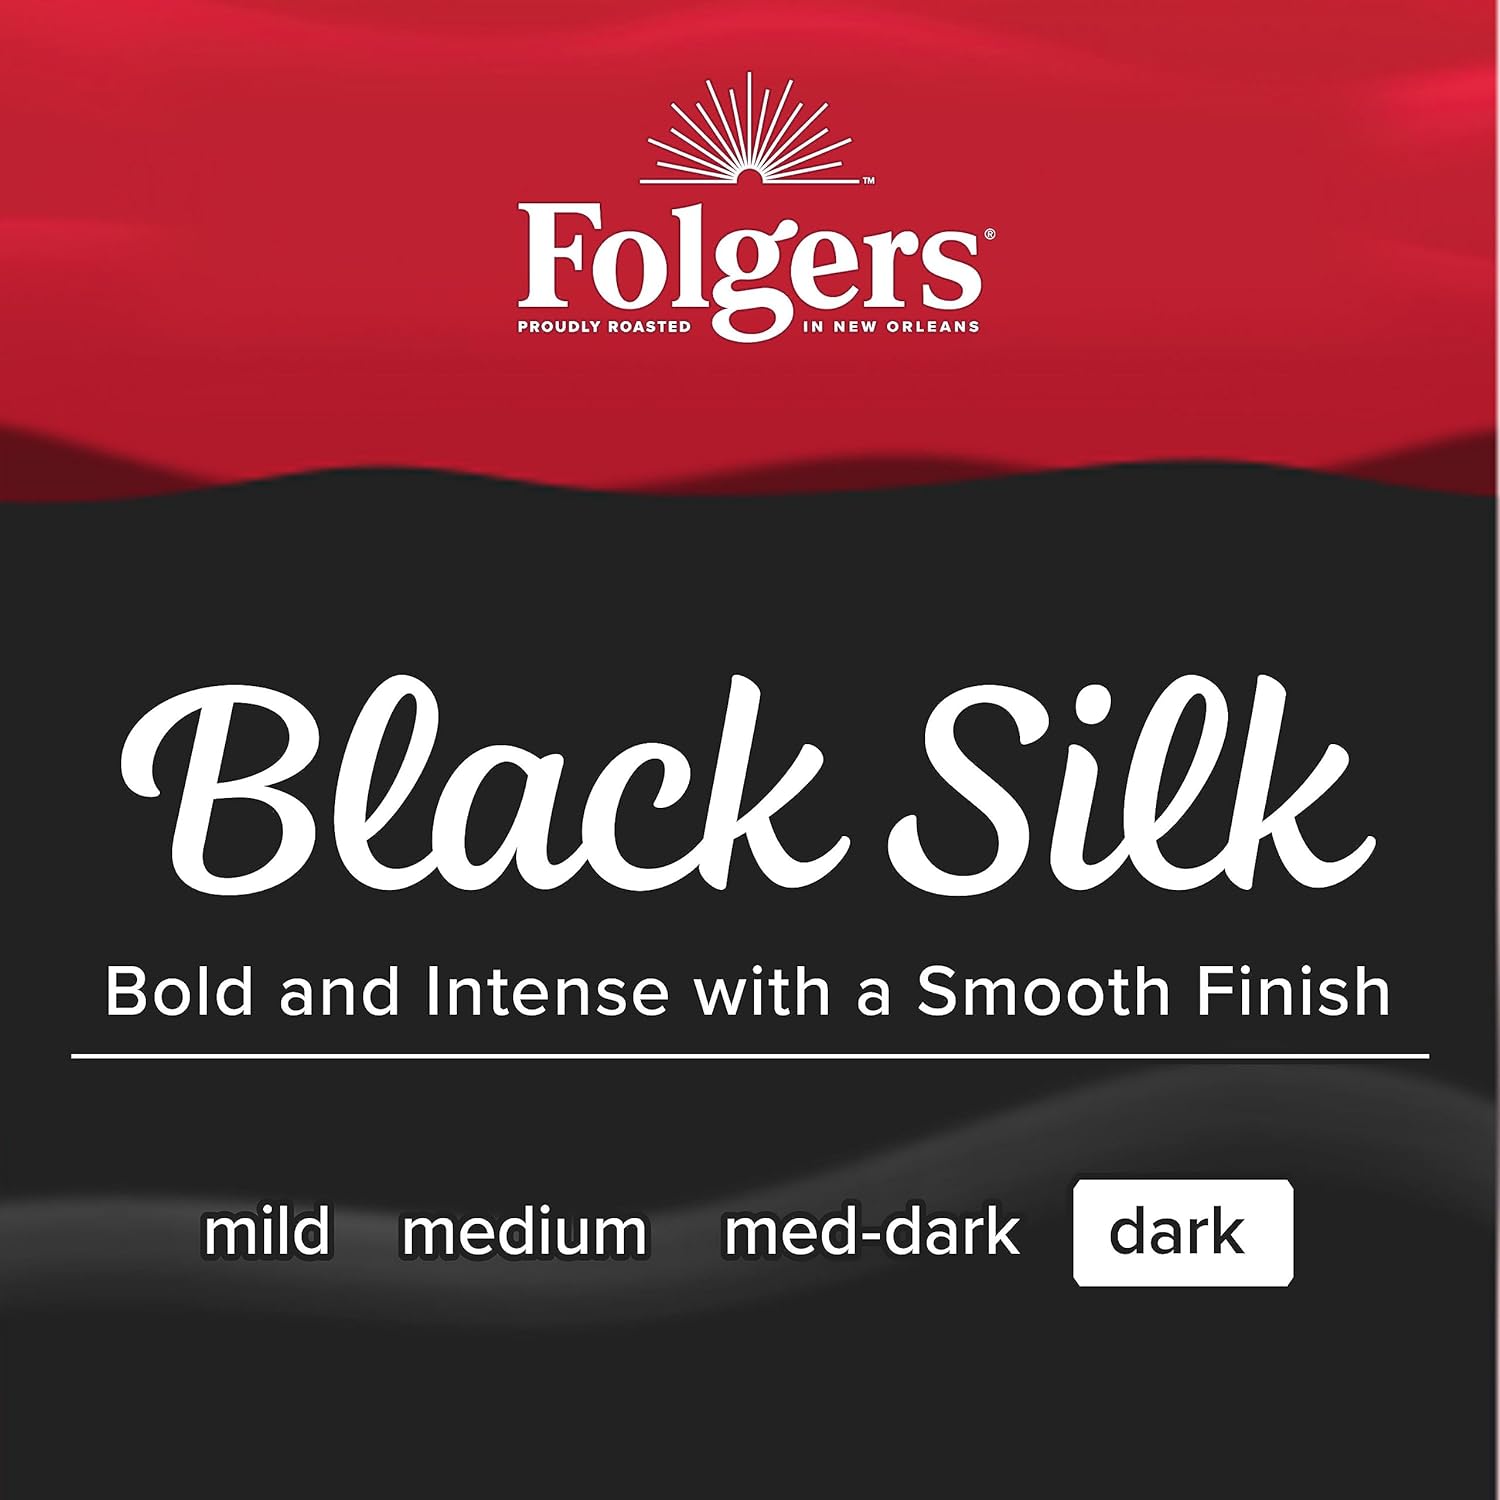 Folgers Black Silk Dark Roast Coffee, 9.6 Ounces (Pack of 6) : Grocery & Gourmet Food